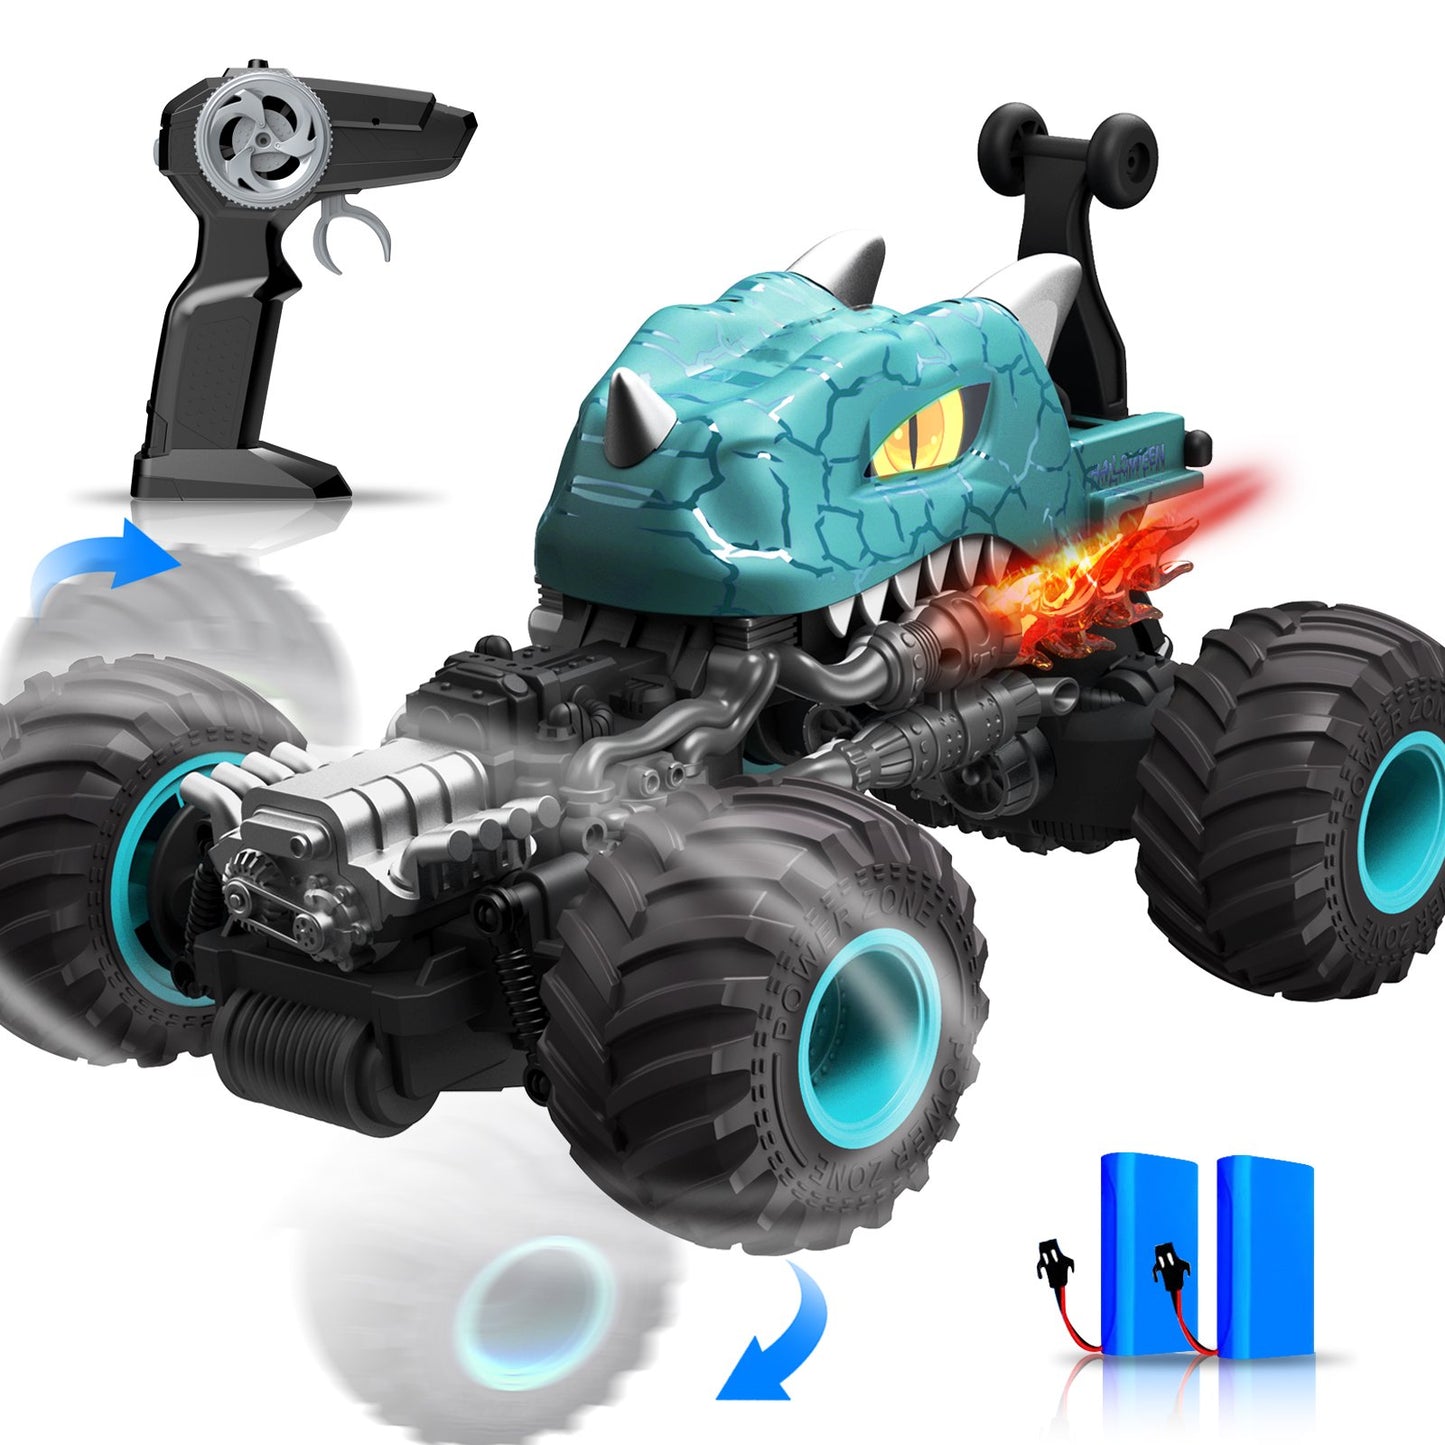 Rc carro monster trucks para meninos dinossauro brinquedos 1:15